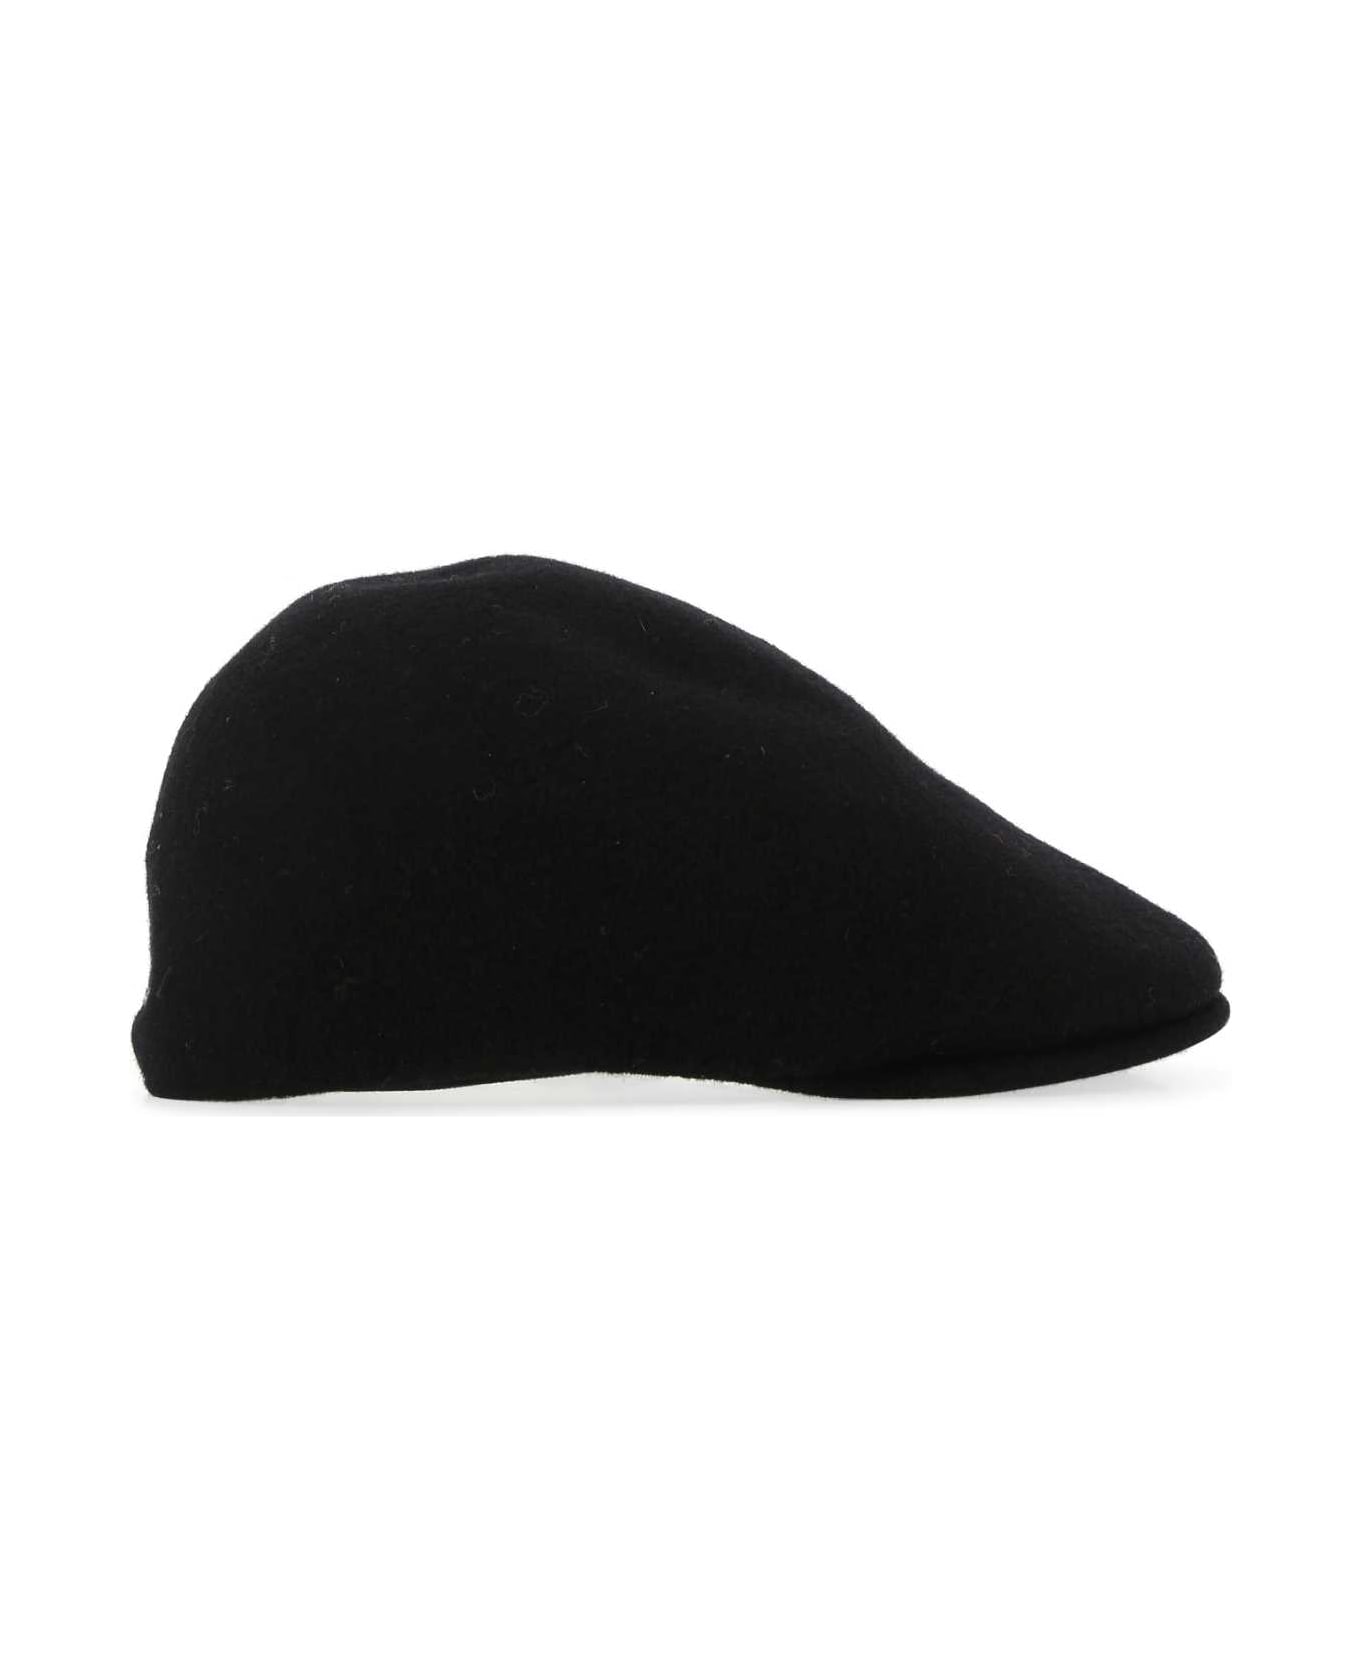 Kangol Black Felt Baker Boy Hat - BK001 帽子